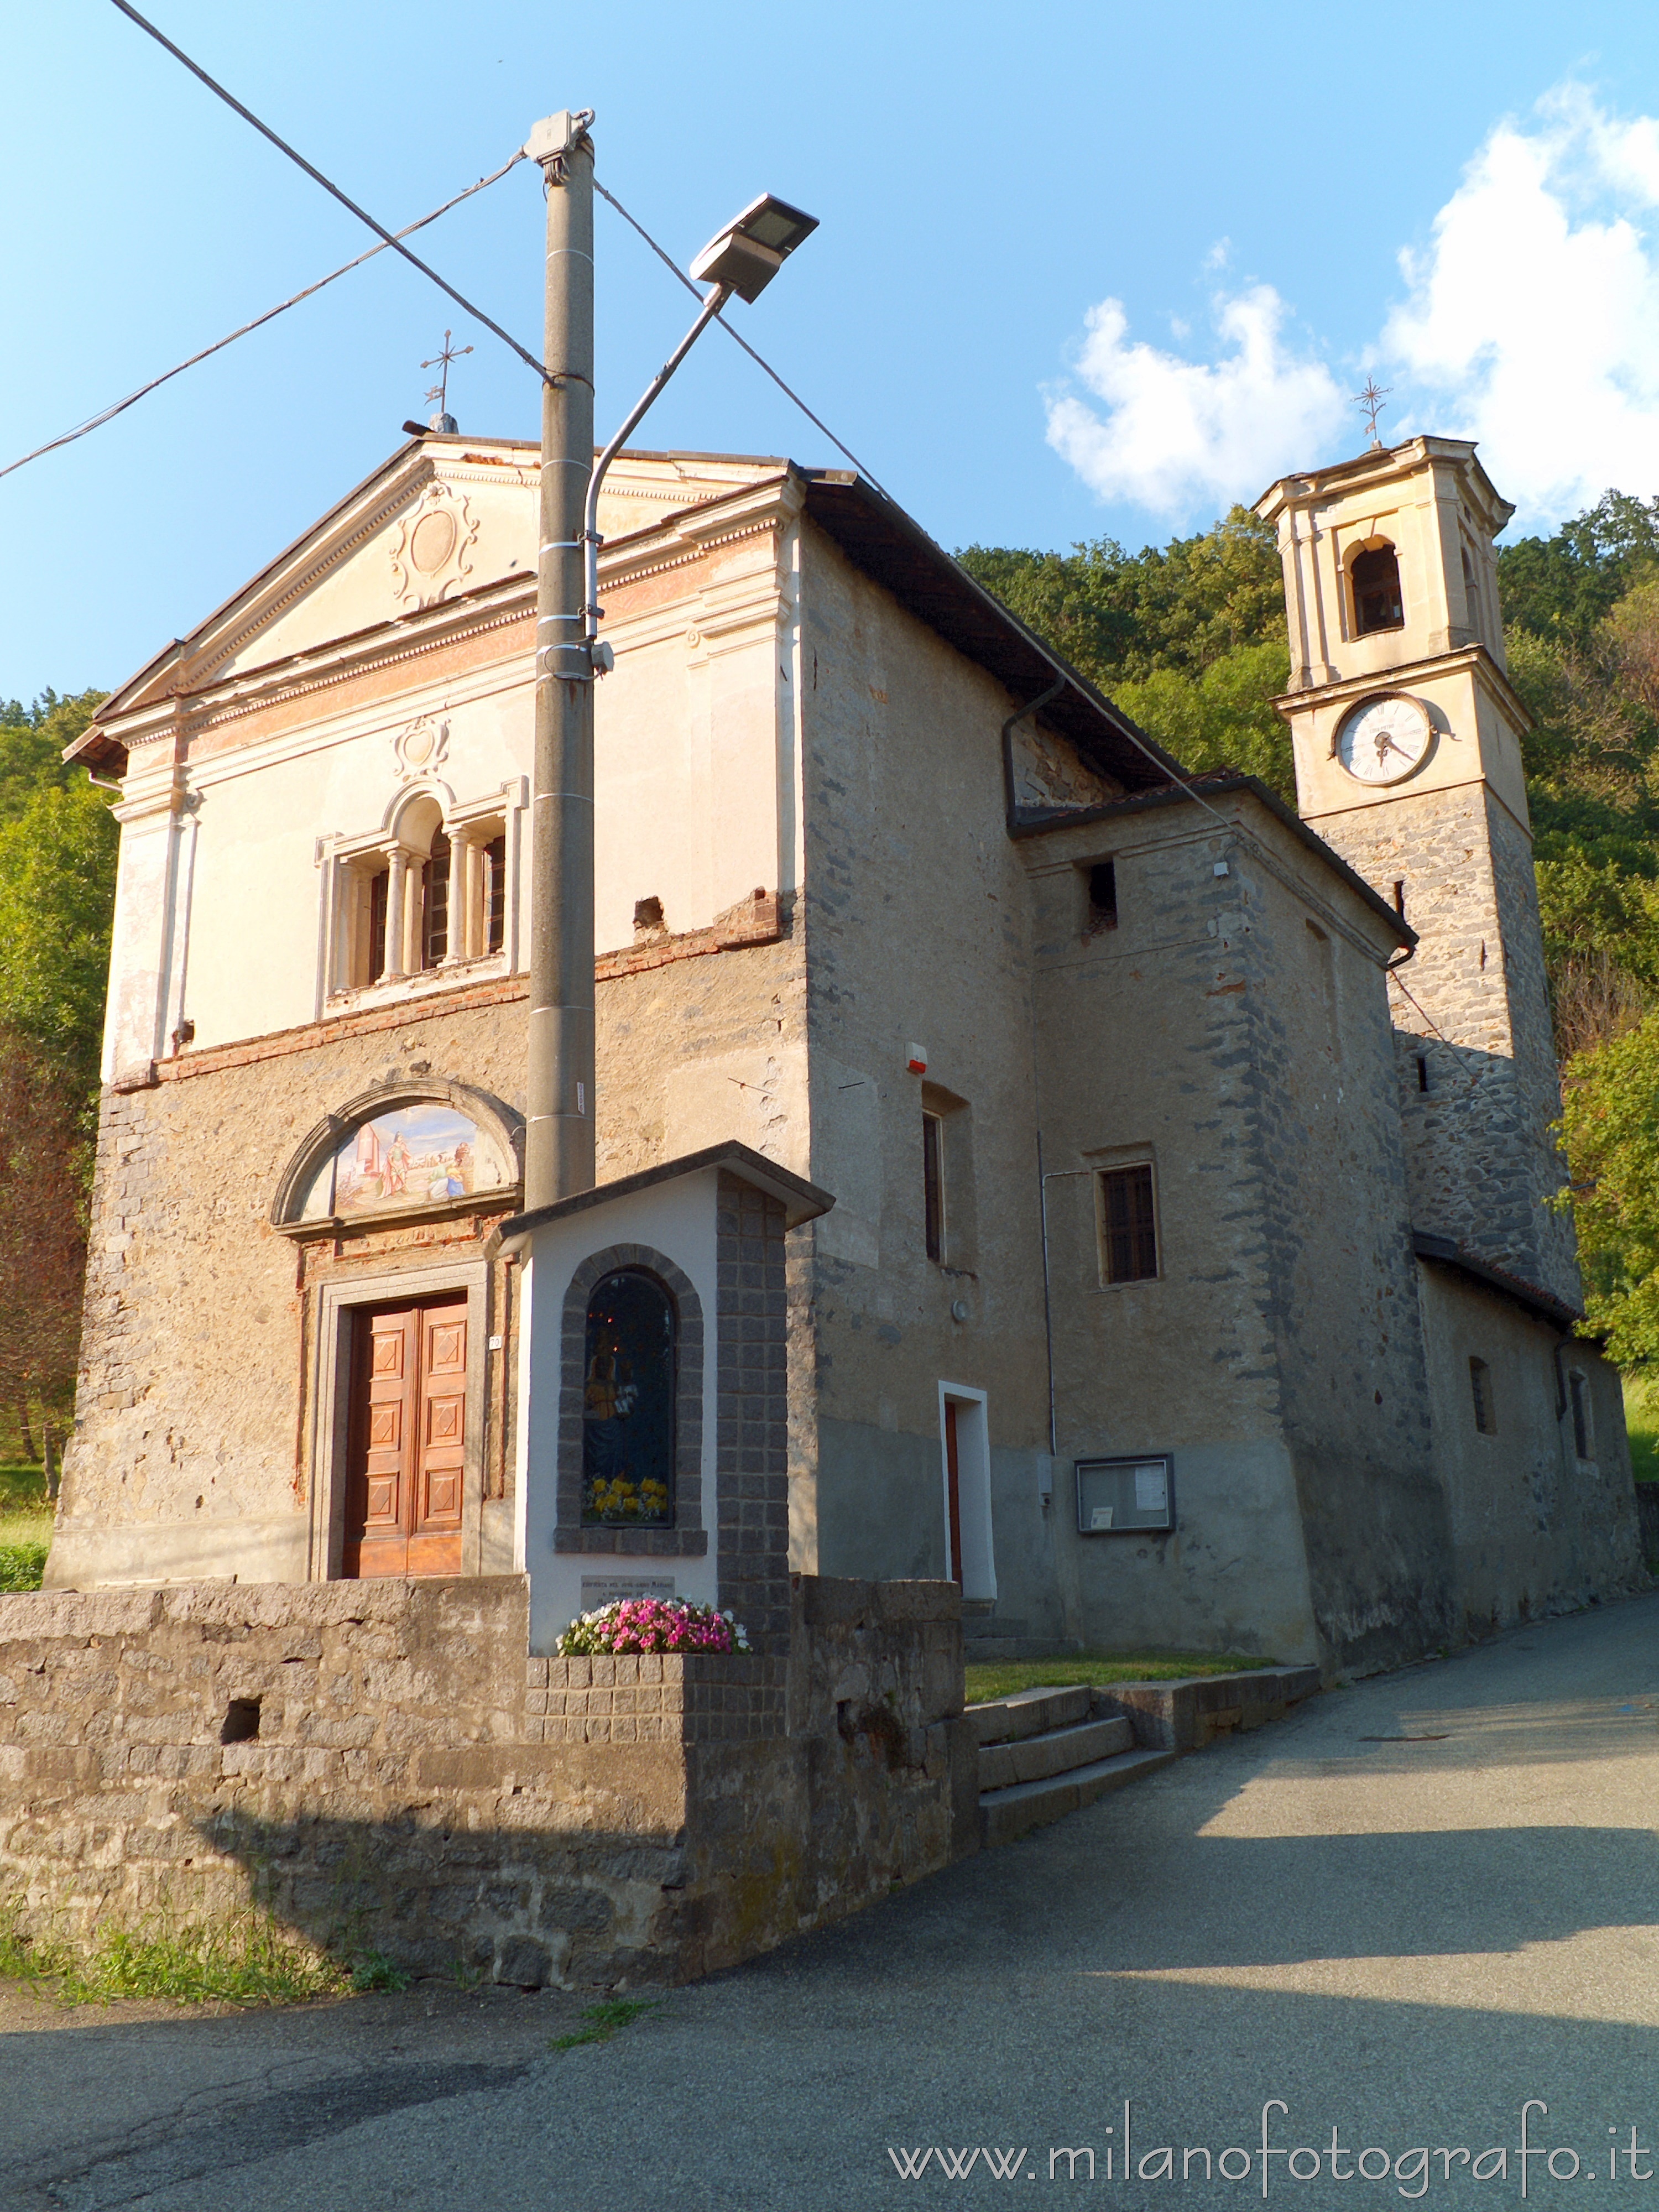 Passobreve frazione di Sagliano Micca (Biella): Oratorio dei Santi Defendente e Lorenzo - Passobreve frazione di Sagliano Micca (Biella)